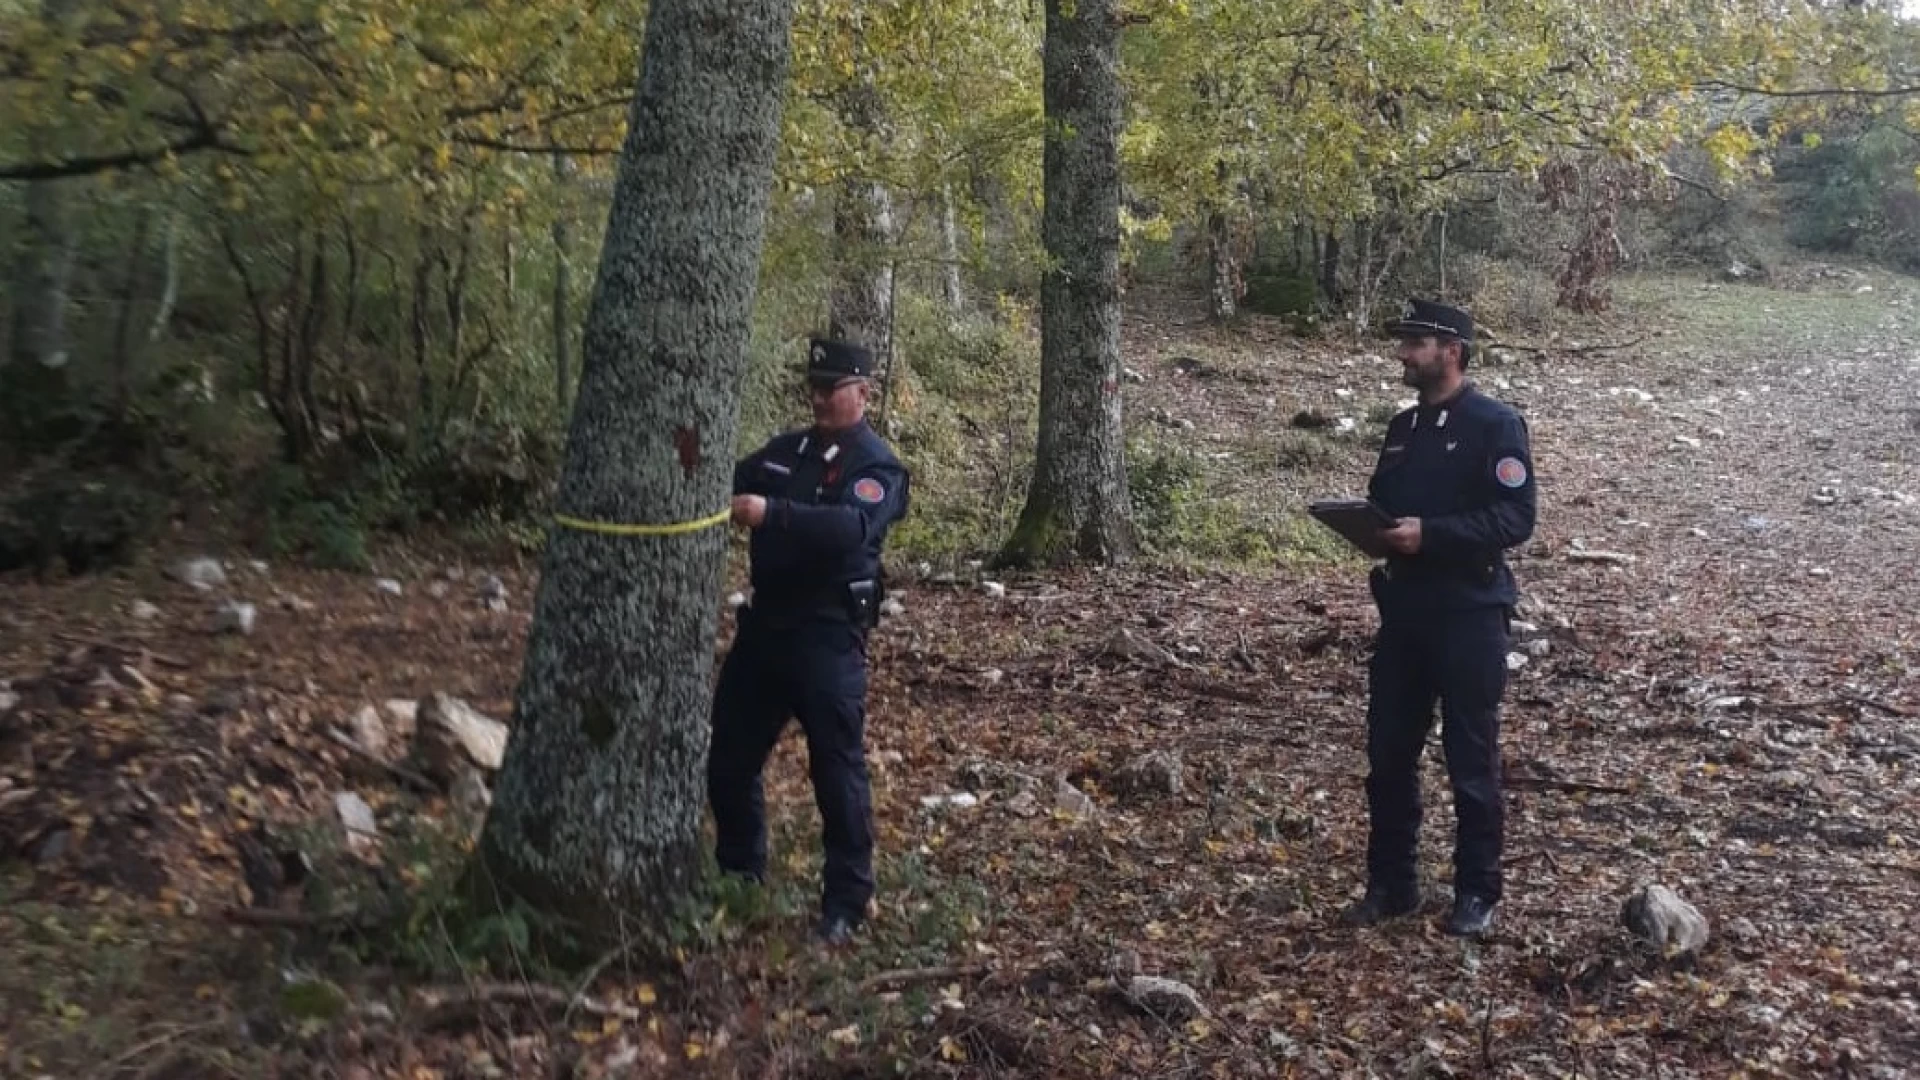 Taglio improprio di boschi, denunciato imprenditore dai Carabinieri Forestali